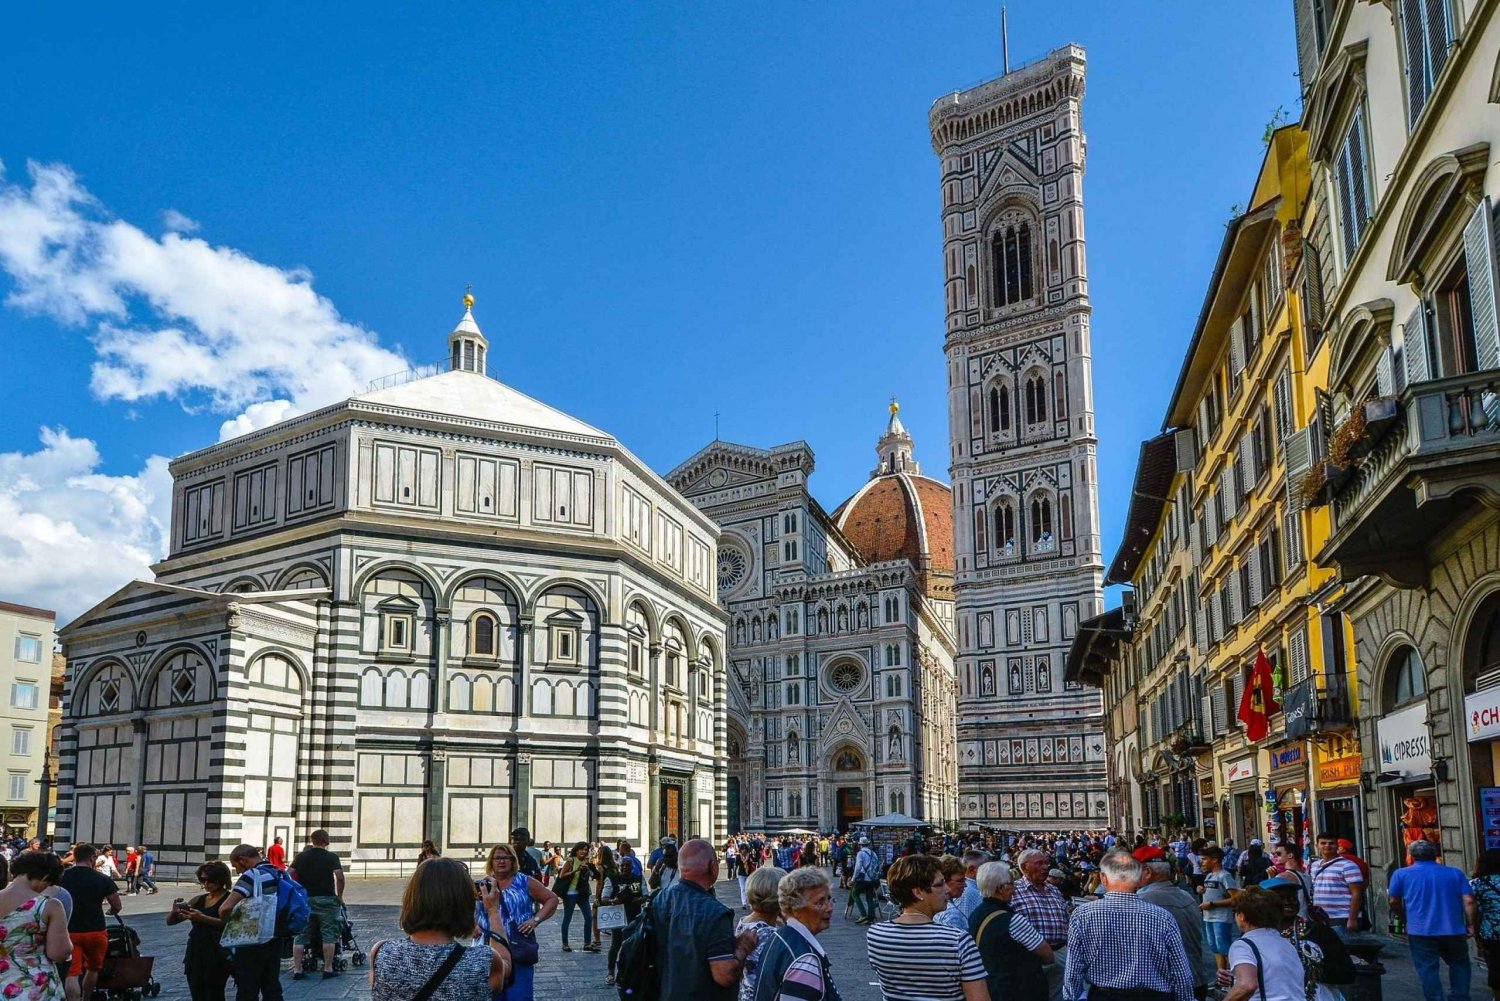 Firenze: Duomo og Brunelleschis kuppel Rundvisning for små grupper